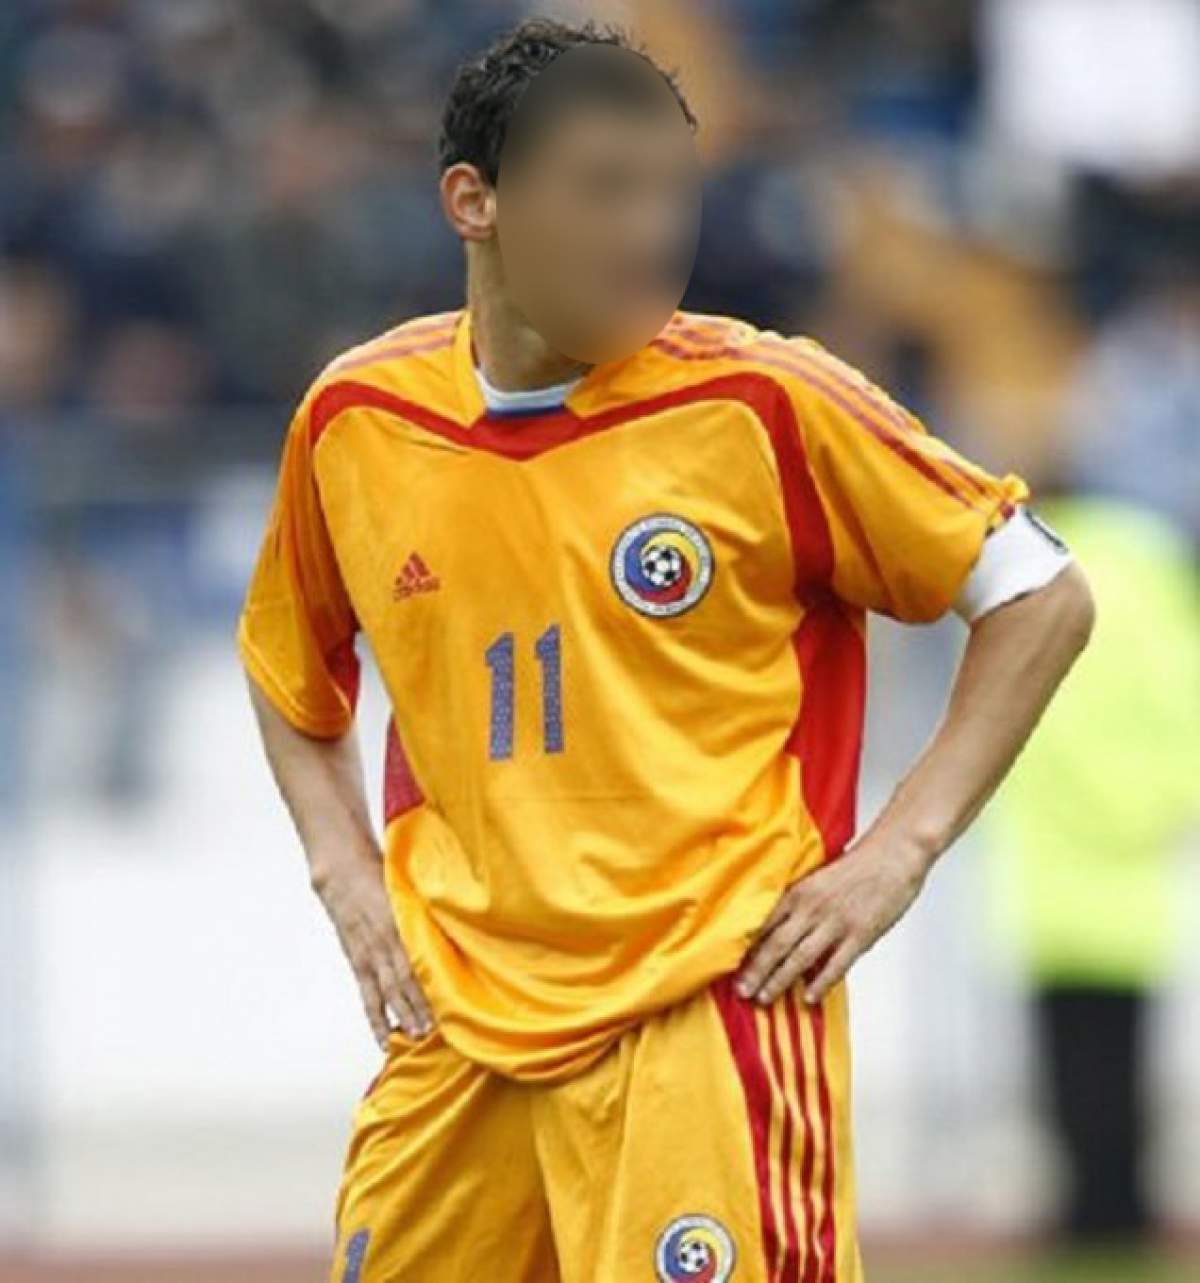 Un fotbalist român s-a lovit la cap! Şi-a pierdut memoria! Află despre cine este vorba!